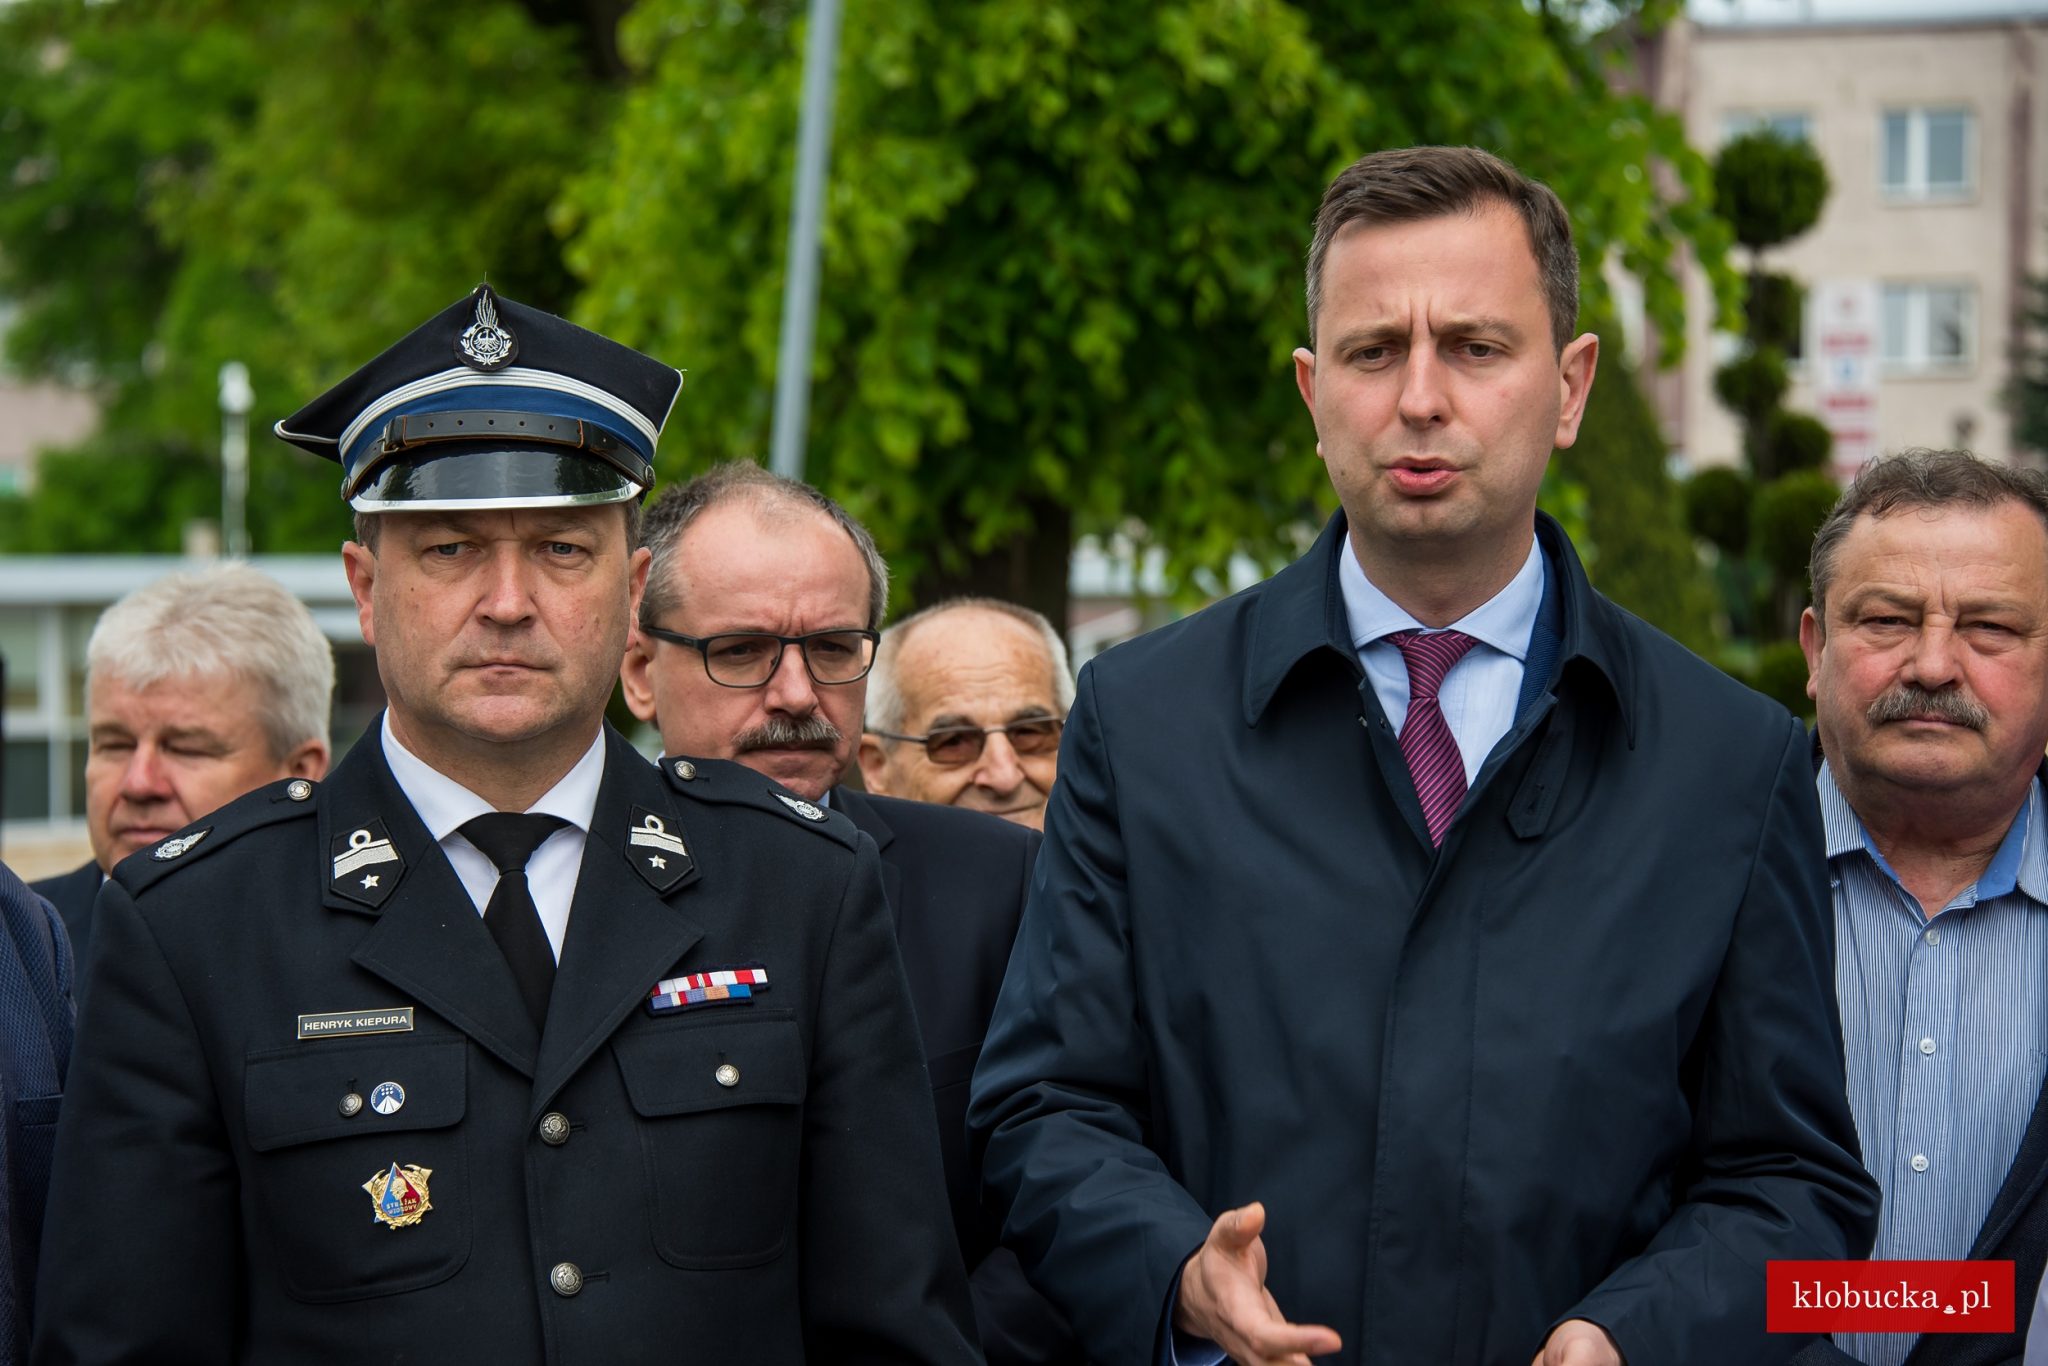 Польша готова помочь Украине вернуть мужчин призывного возраста, заявил министр